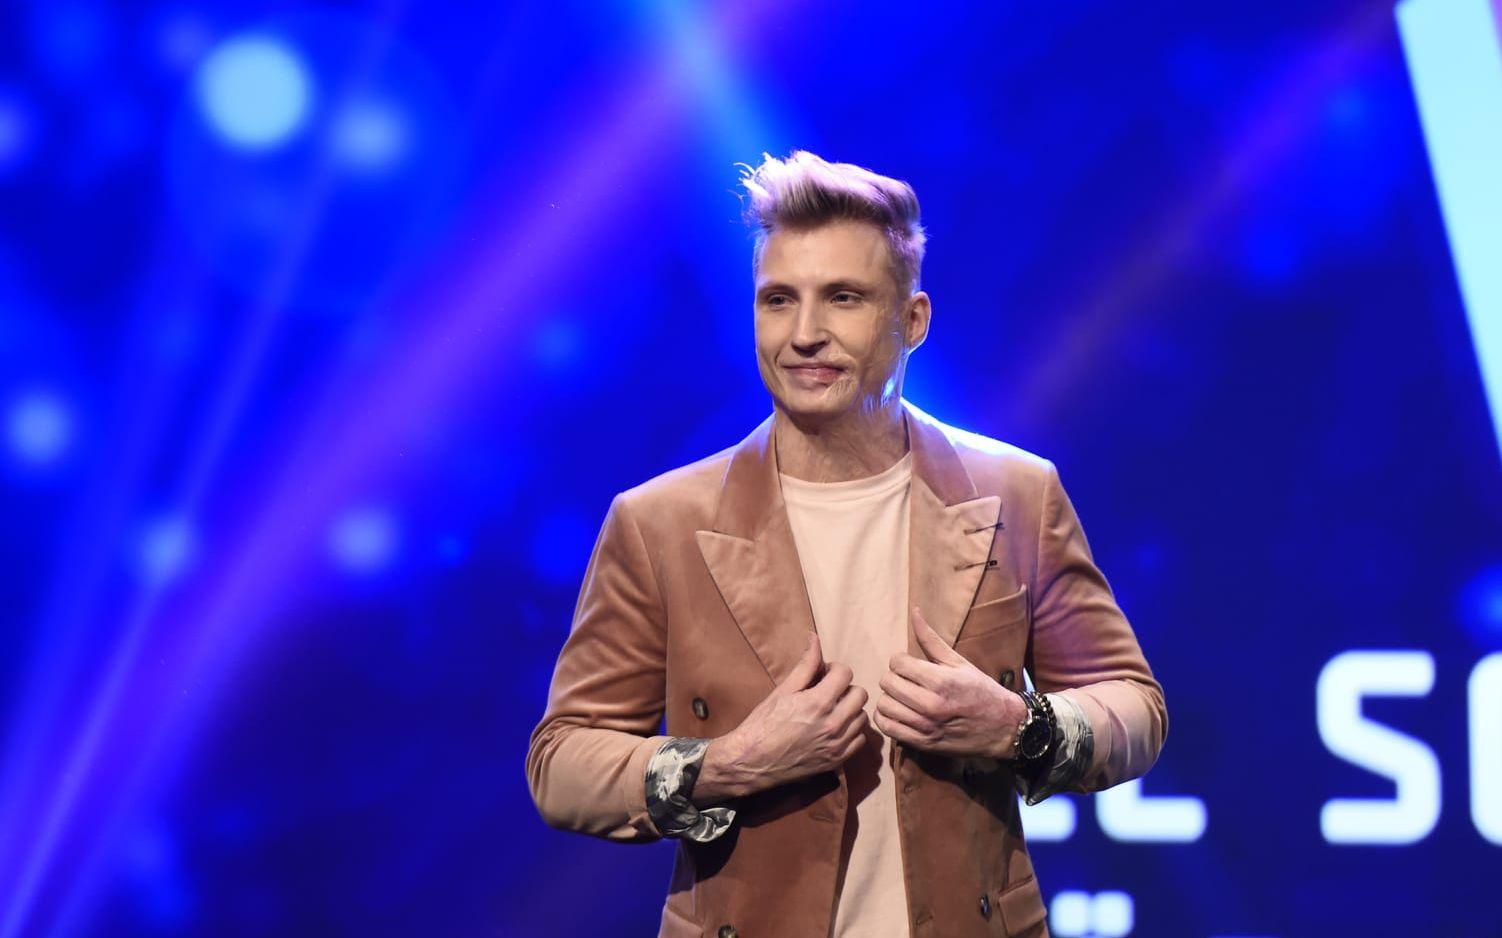 Axel Schylström, en av artisterna i startfältet för Melodifestivalen 2017. Bild: Jessica Gow: TT